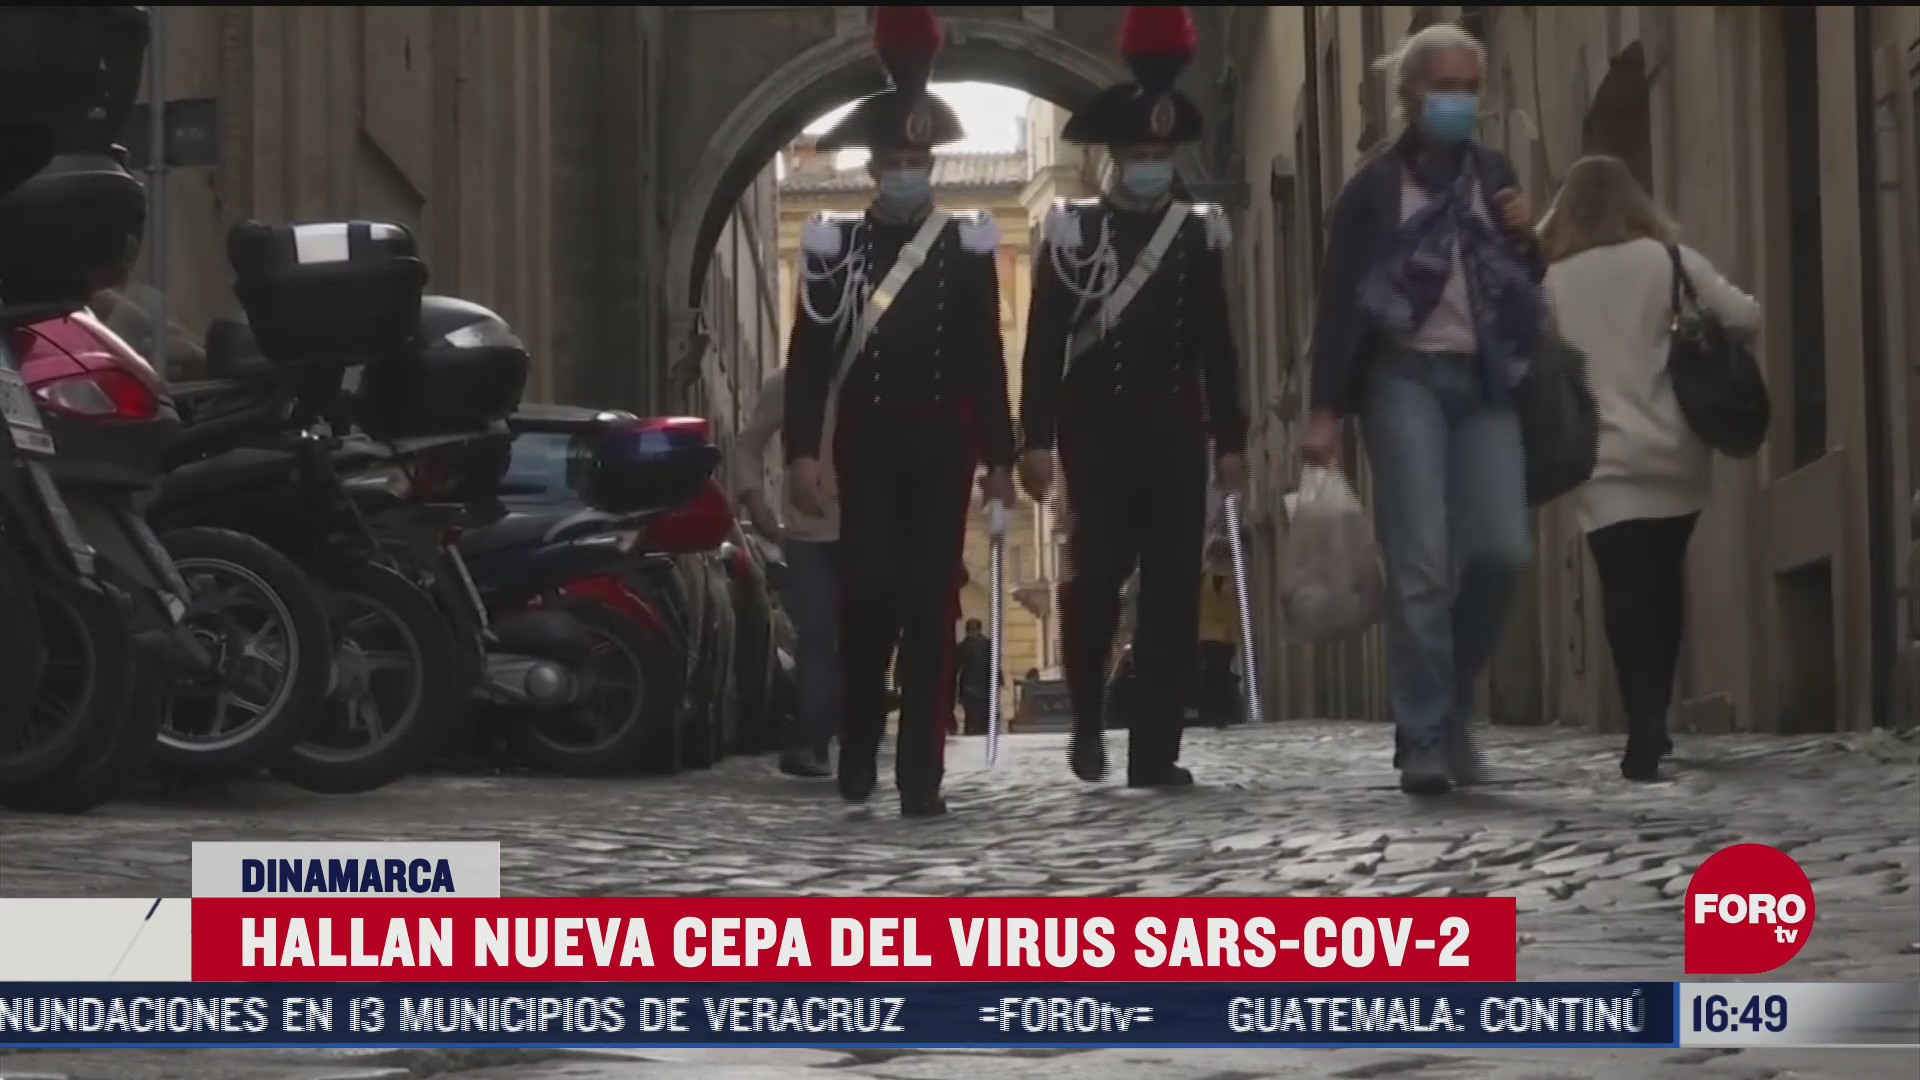 inquietud en europa por nueva mutacion del coronavirus